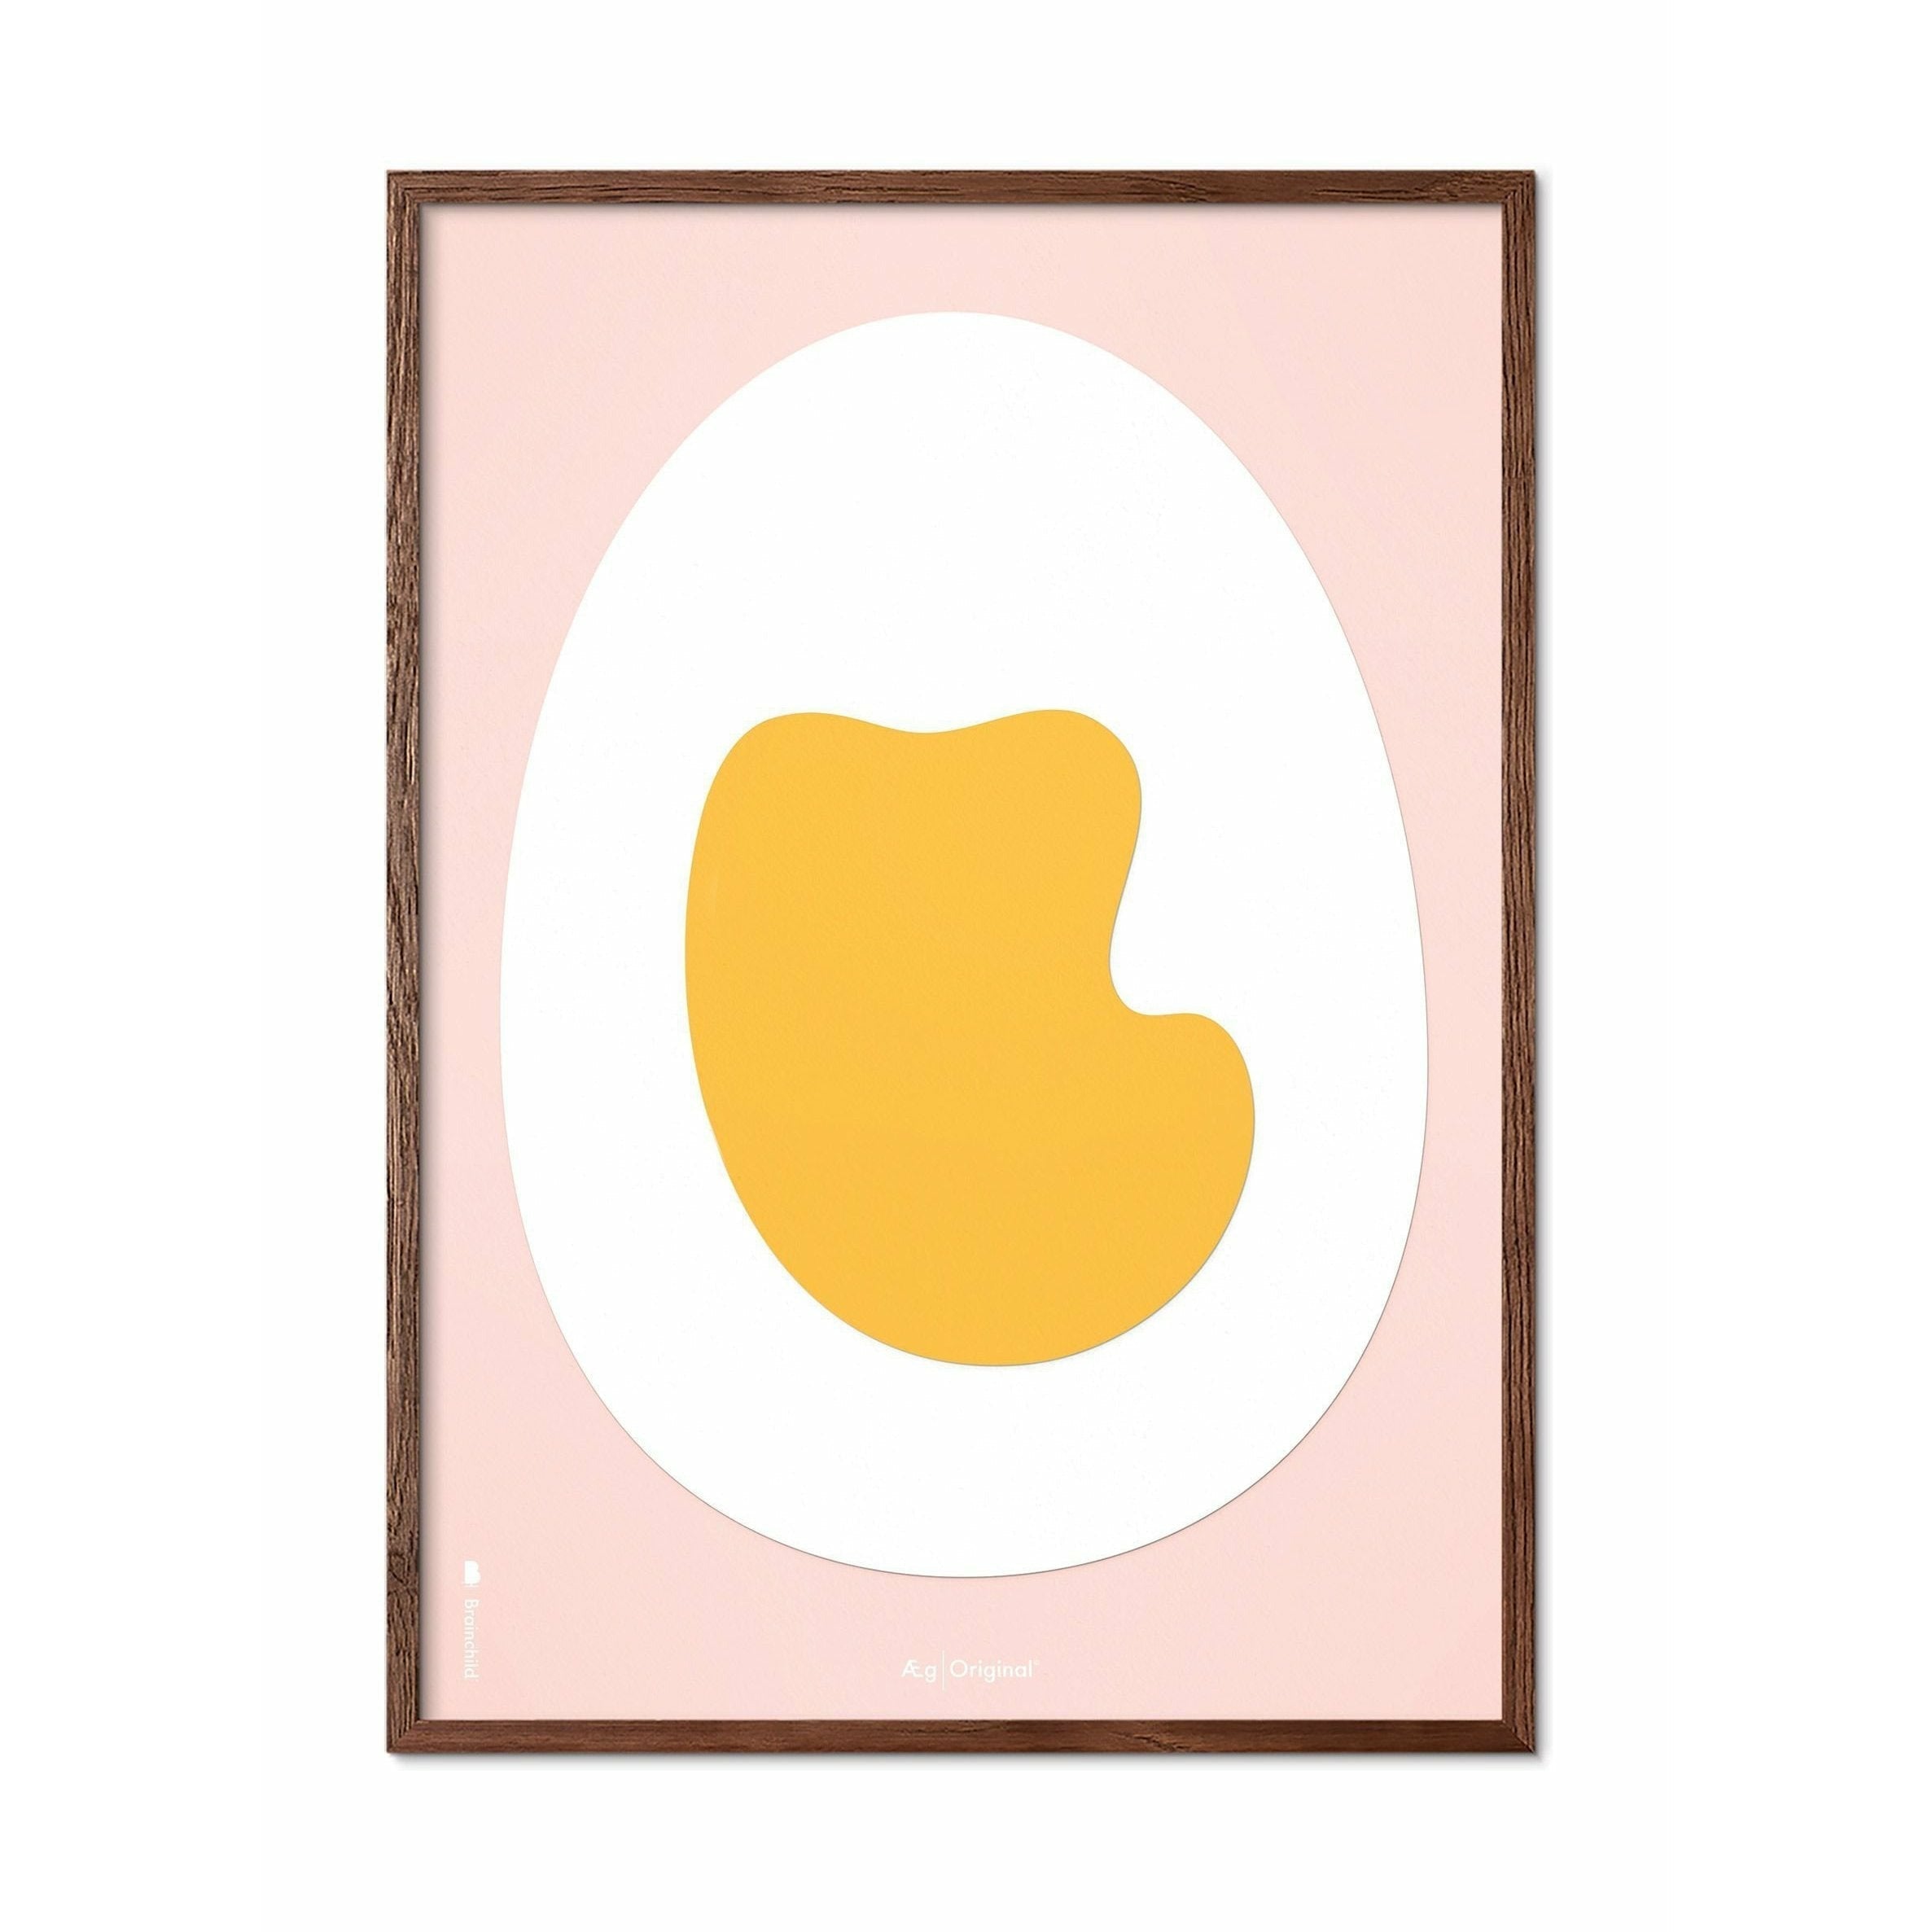 Pomysły plakat z klipsem do papieru jajowego, ciemne drewniane rama A5, różowe tło